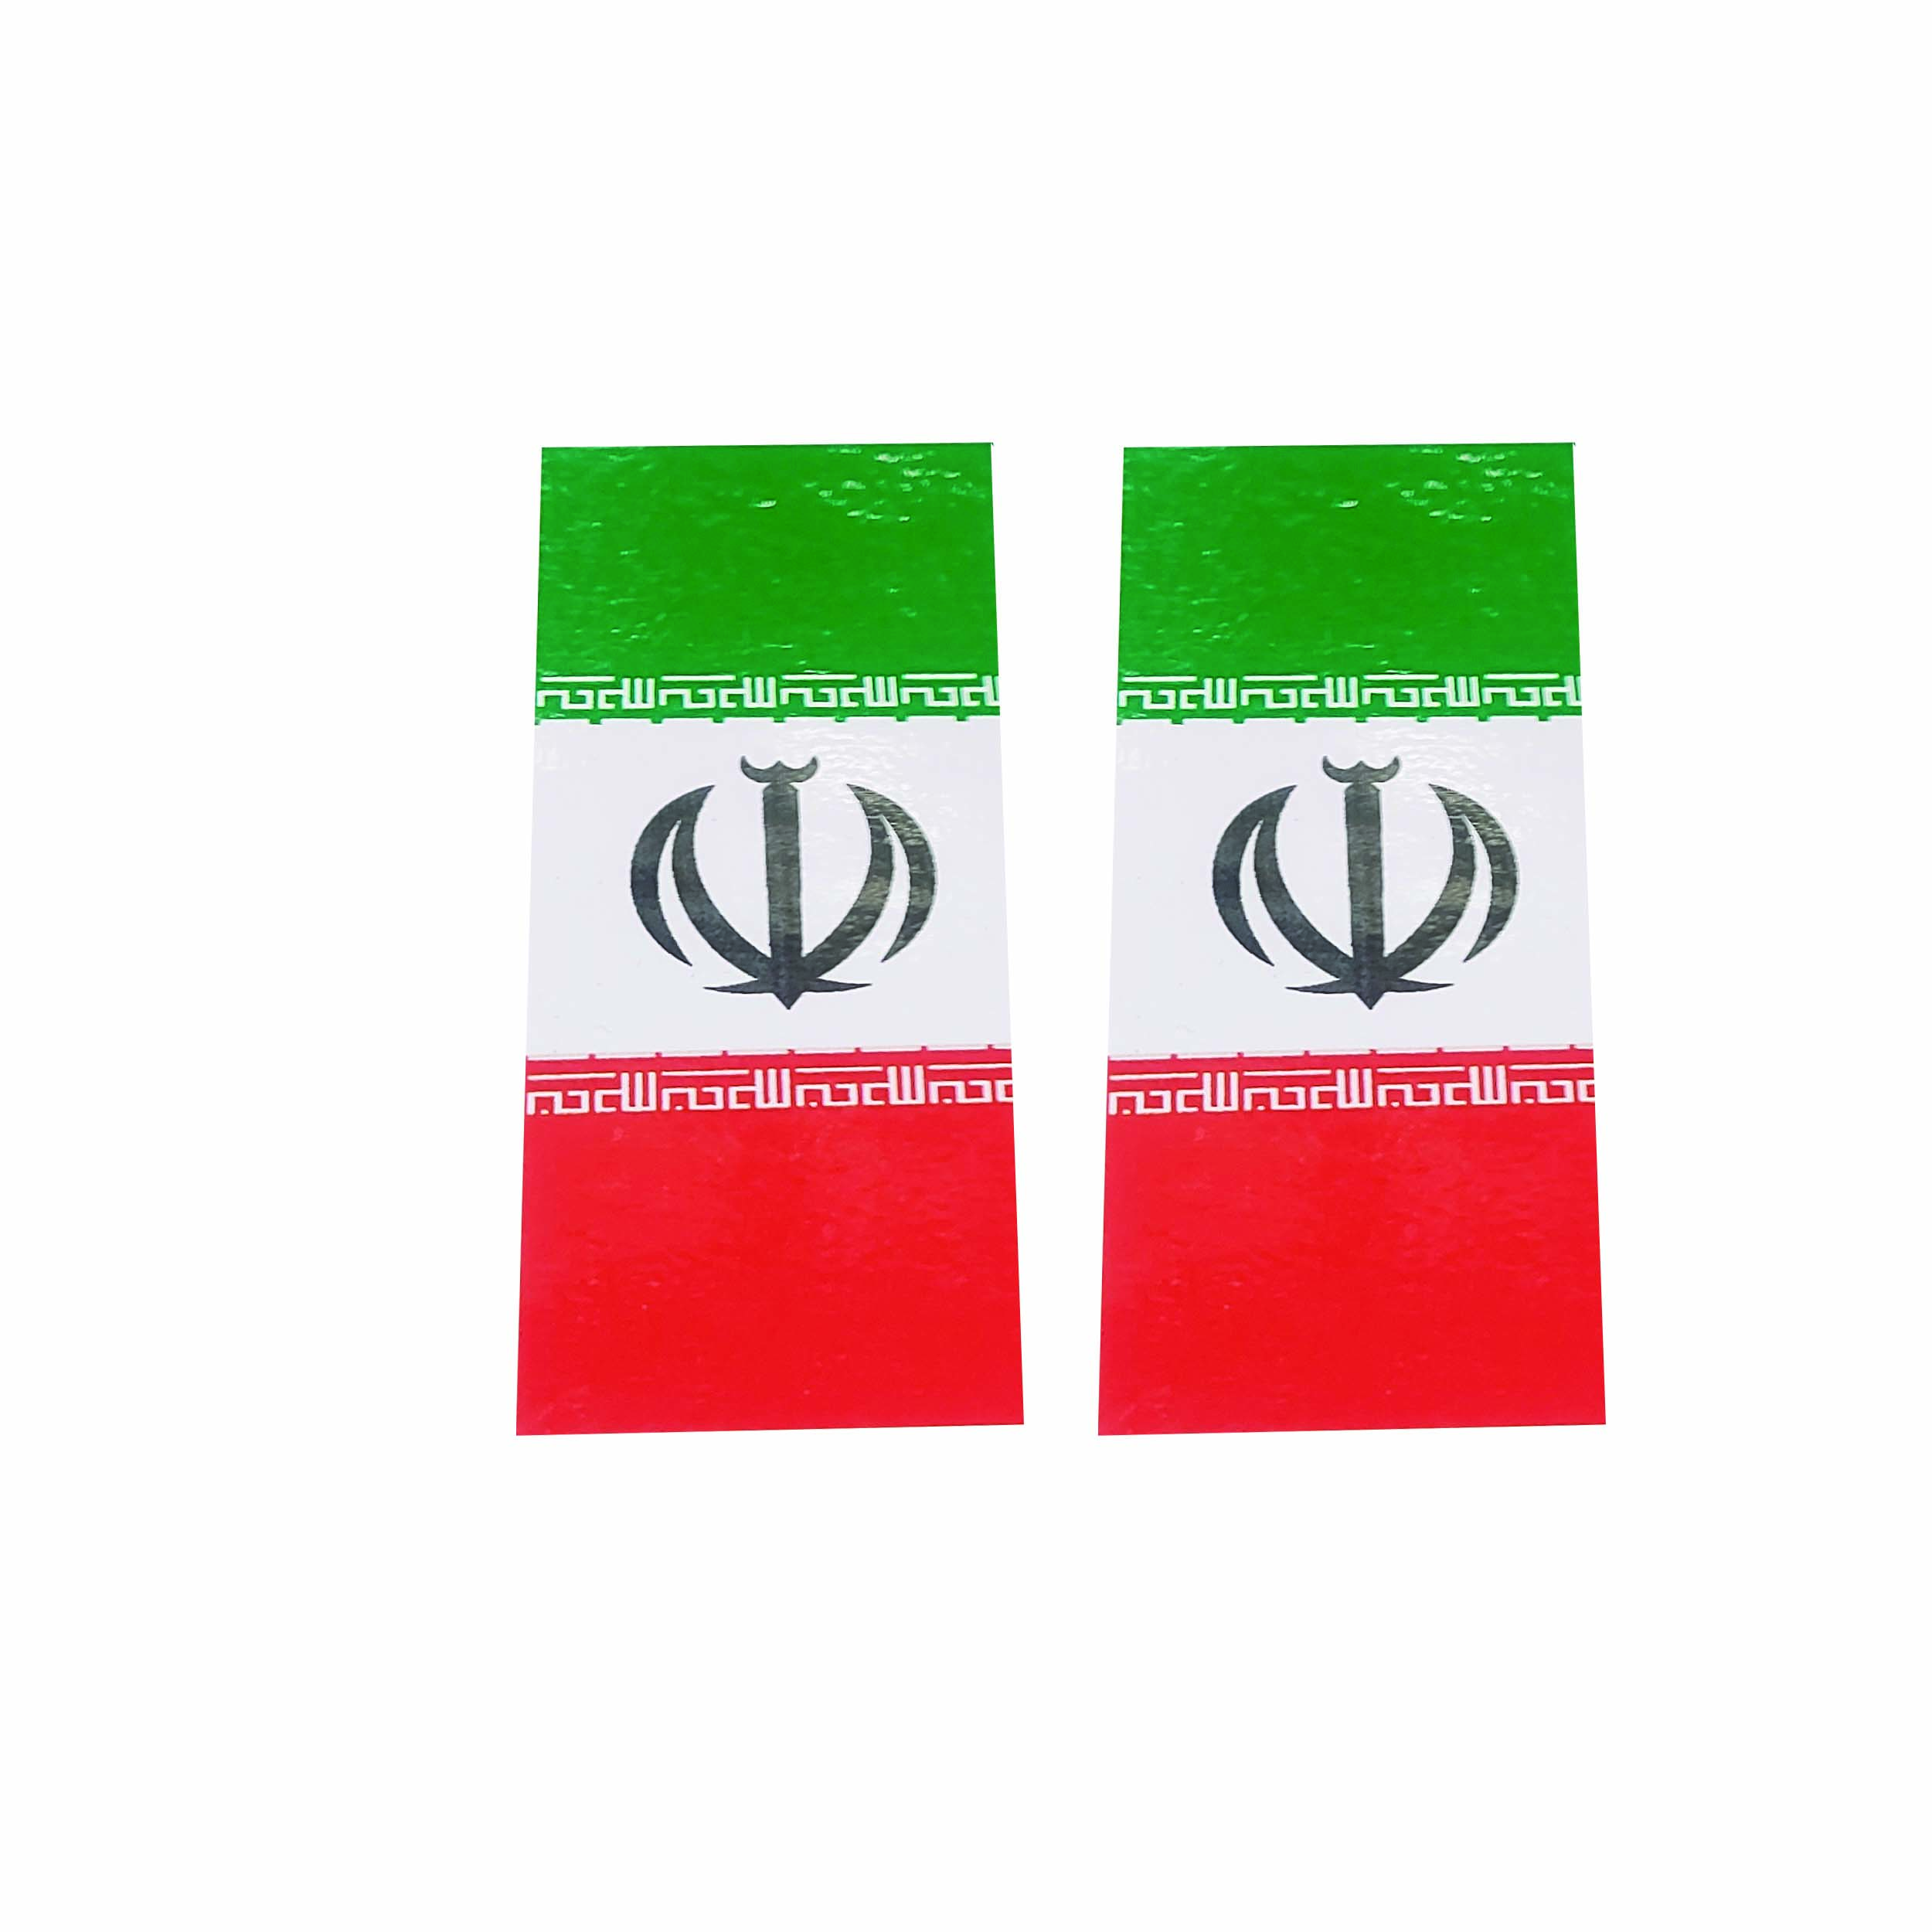 برچسب موتور سیکلت طرح پرچم ایران کد S 9910  بسته 2 عددی